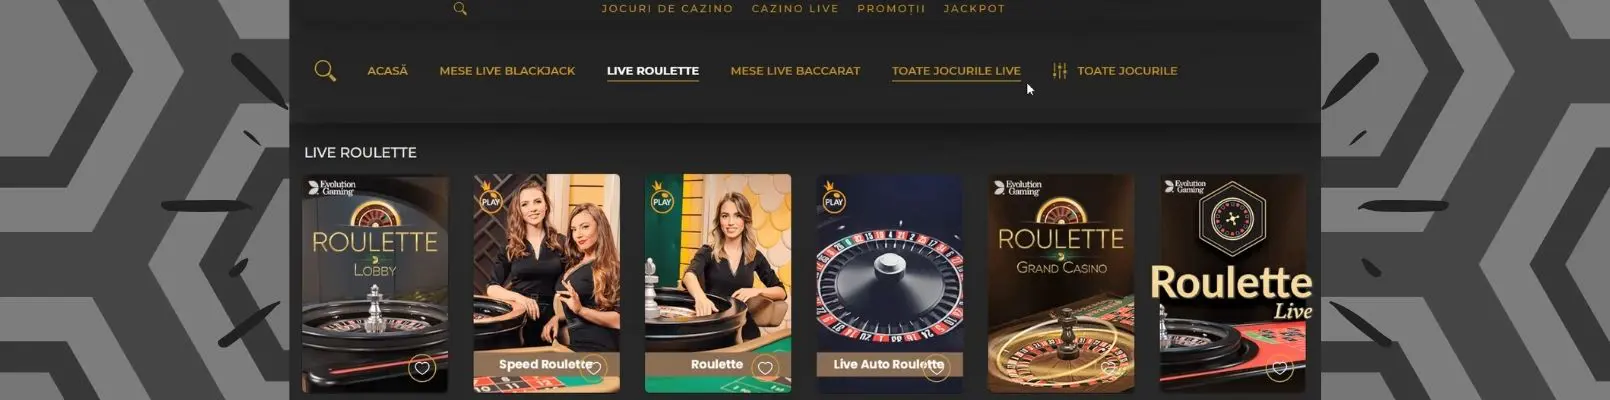 live casino princess ruleta